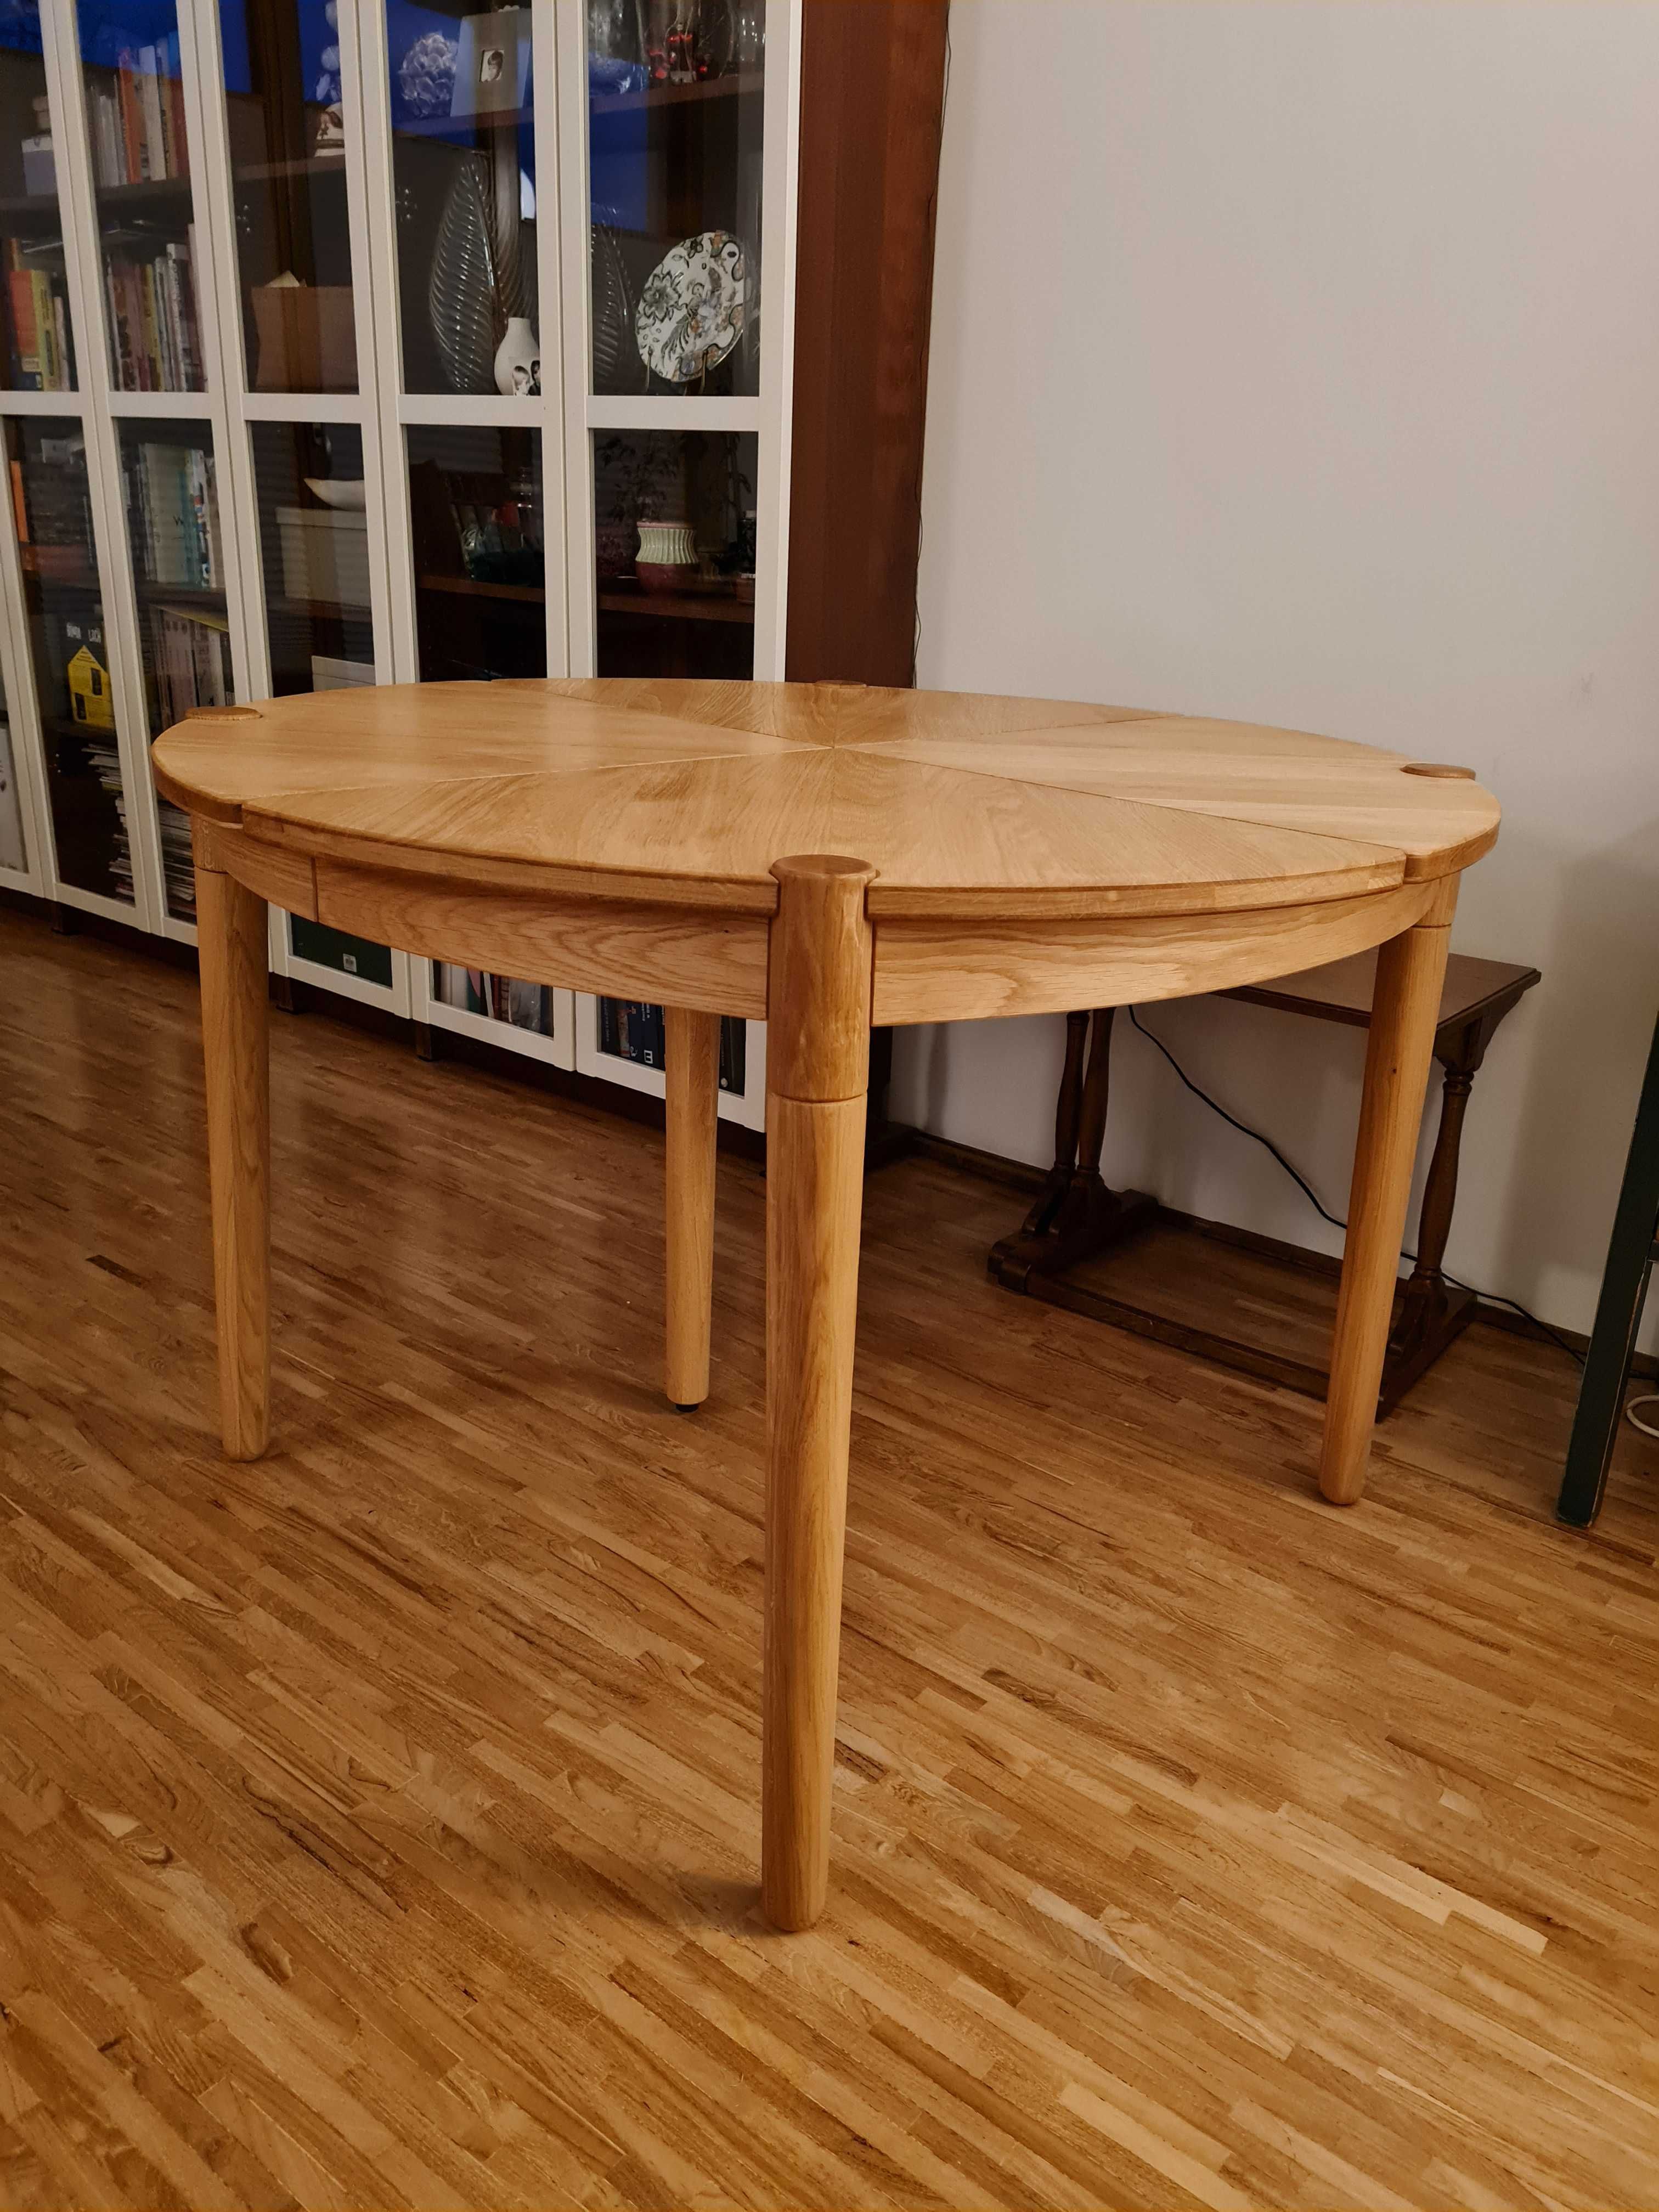 Nowy stół rozkładany Bolia FUSION dąb olejowany design drewniany